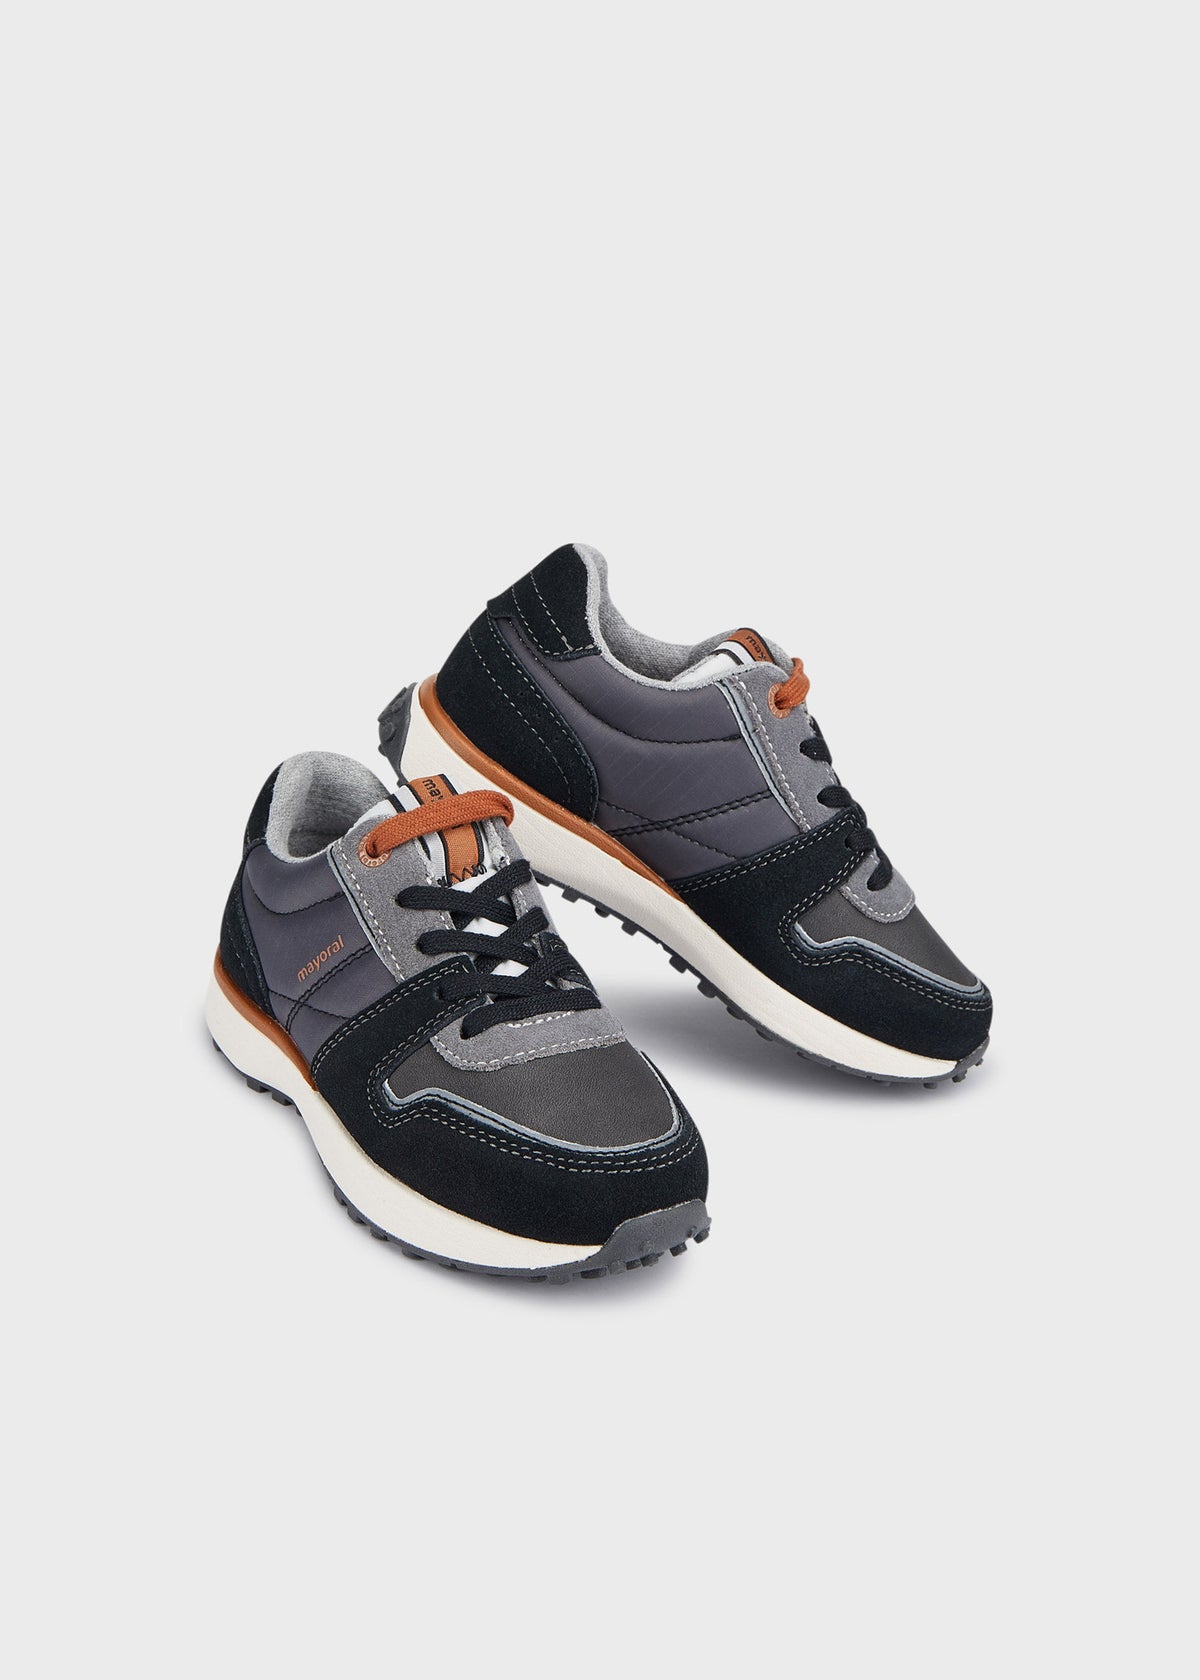 Schuhe 44361 Grau